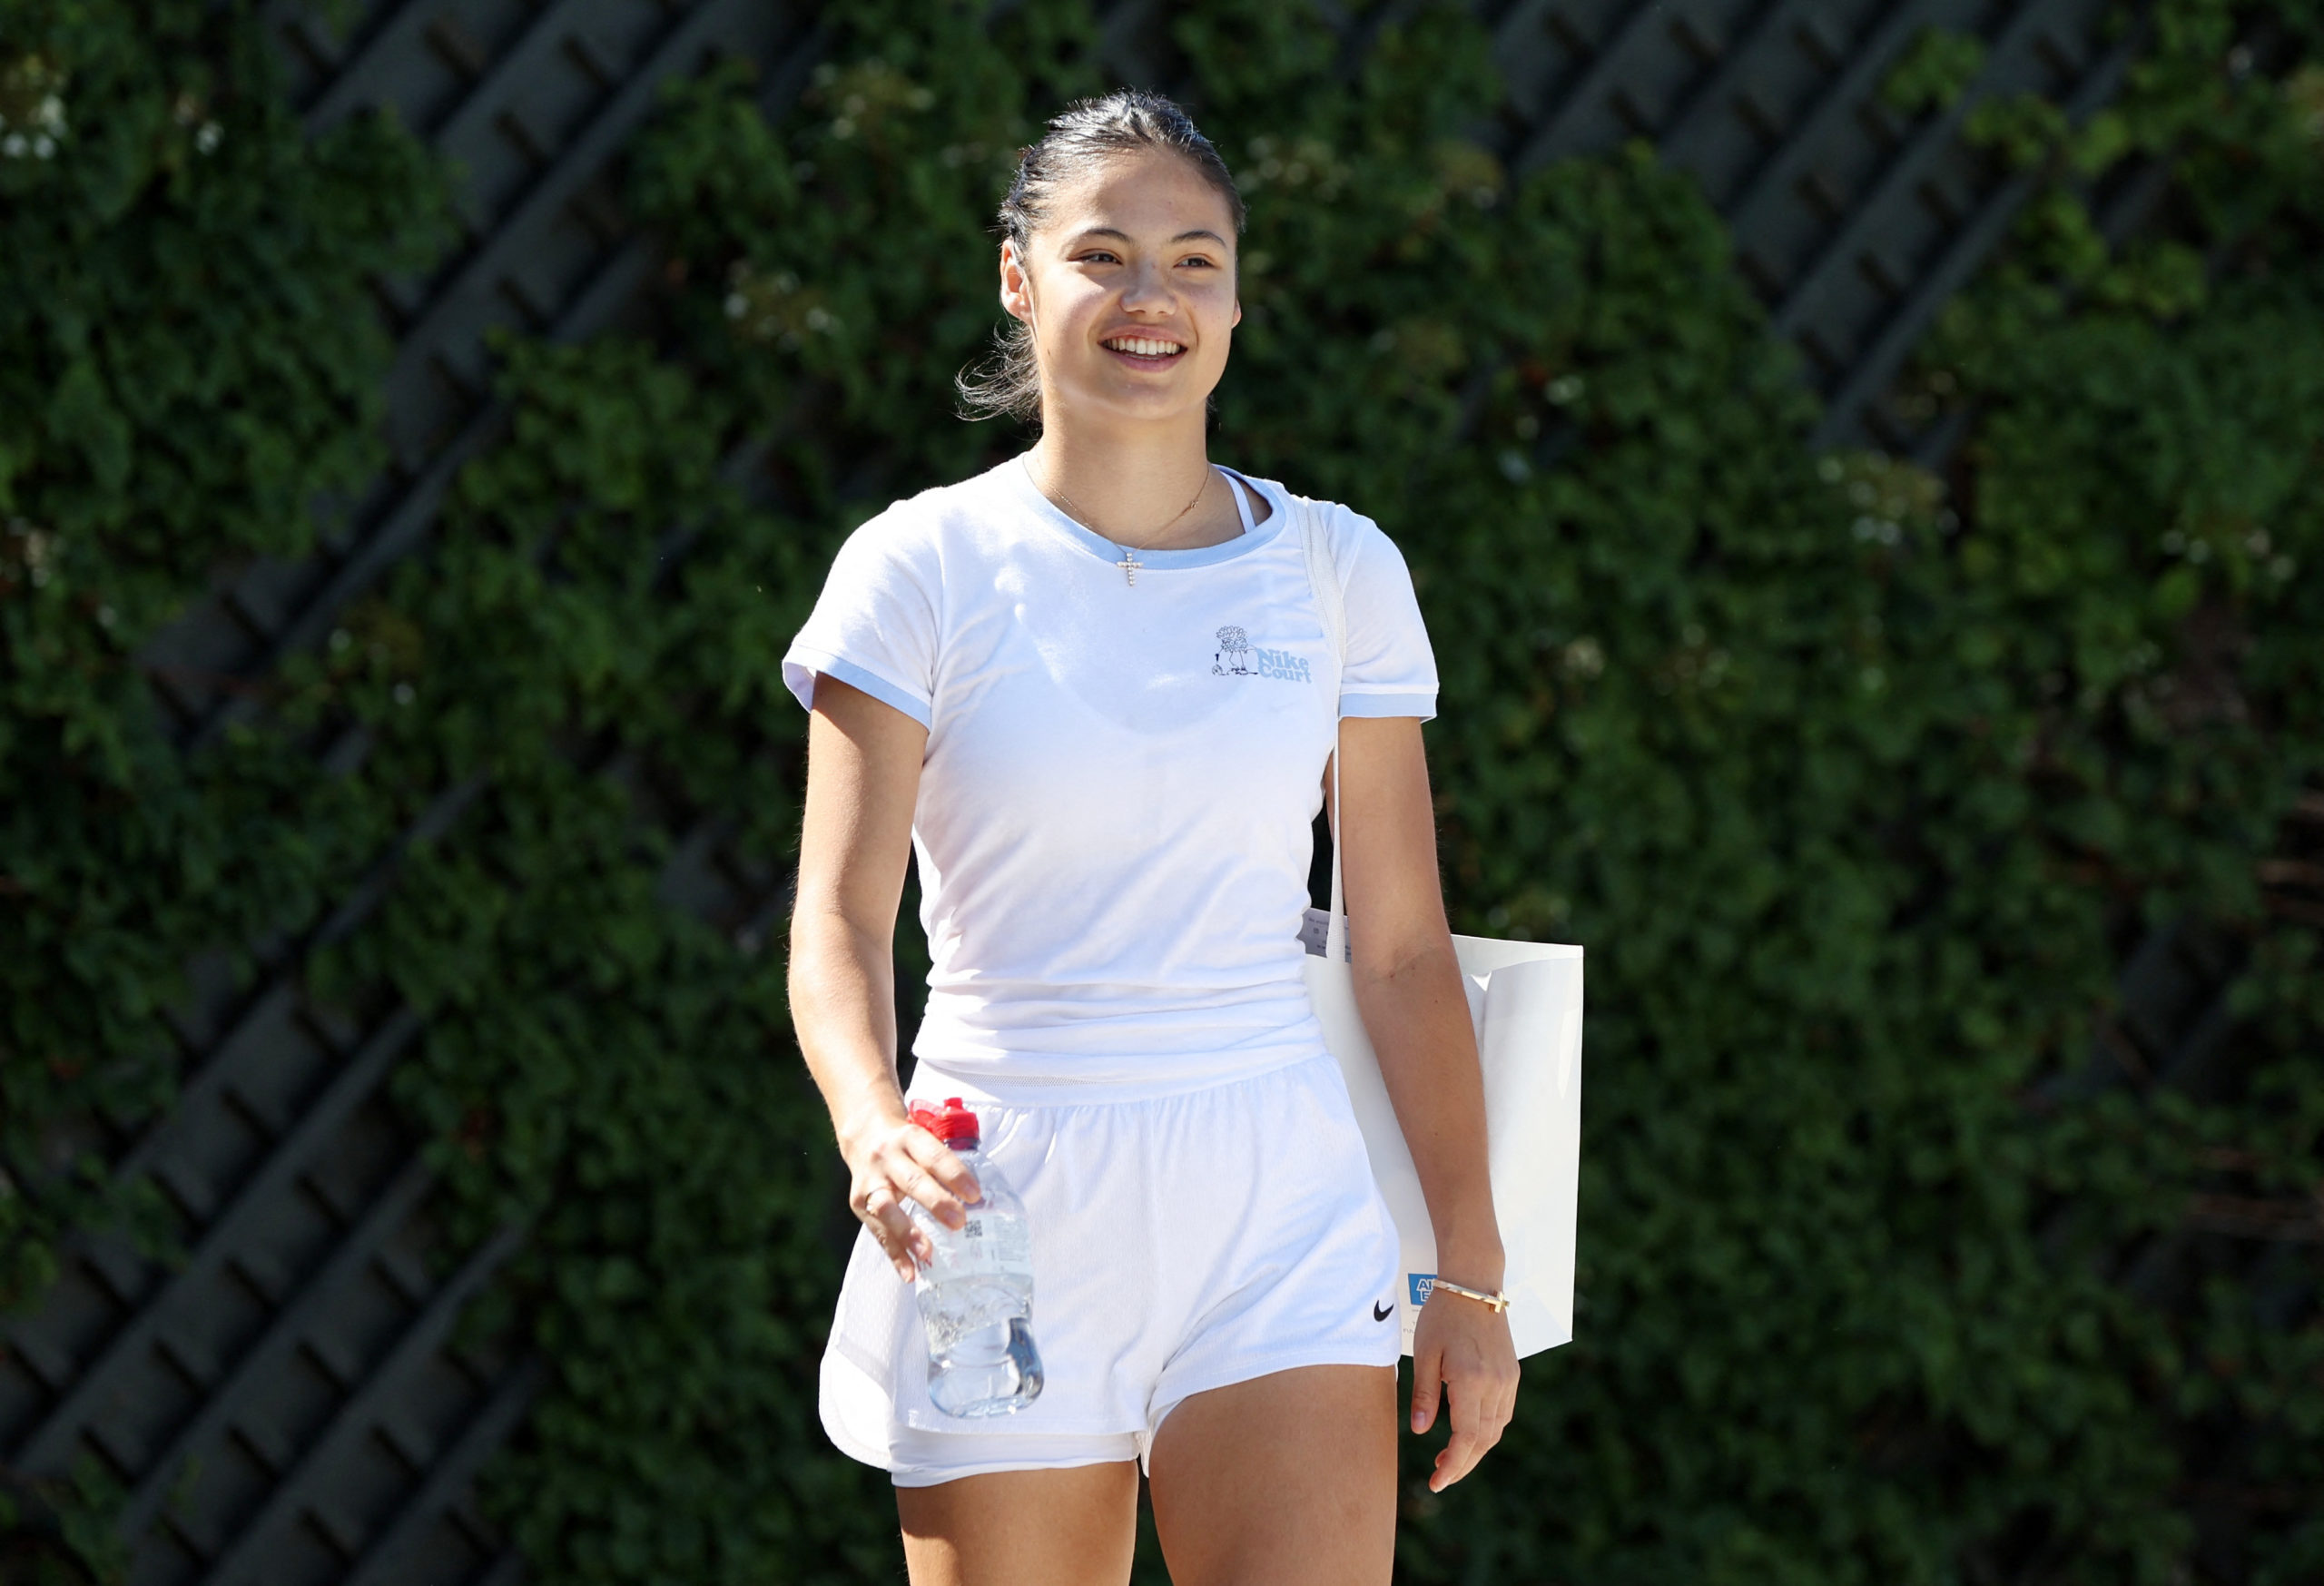 Tenis: Favorit tuan rumah Raducanu menikmati debut Centre Court docket di Wimbledon